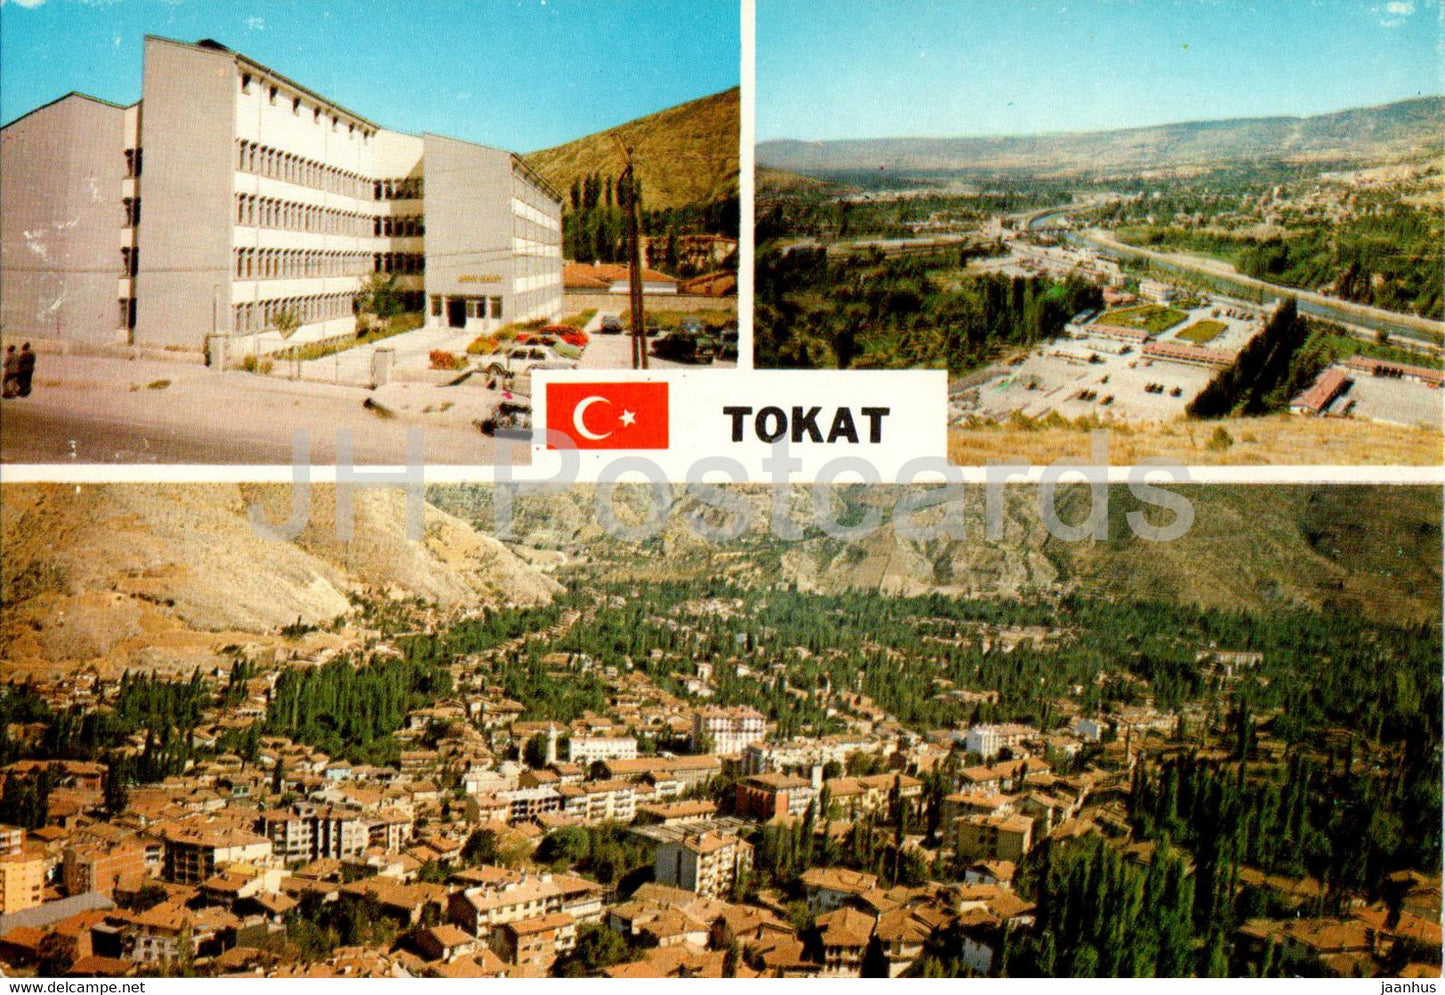 Tokat - 1 - 1985 - Turkey - unused - JH Postcards